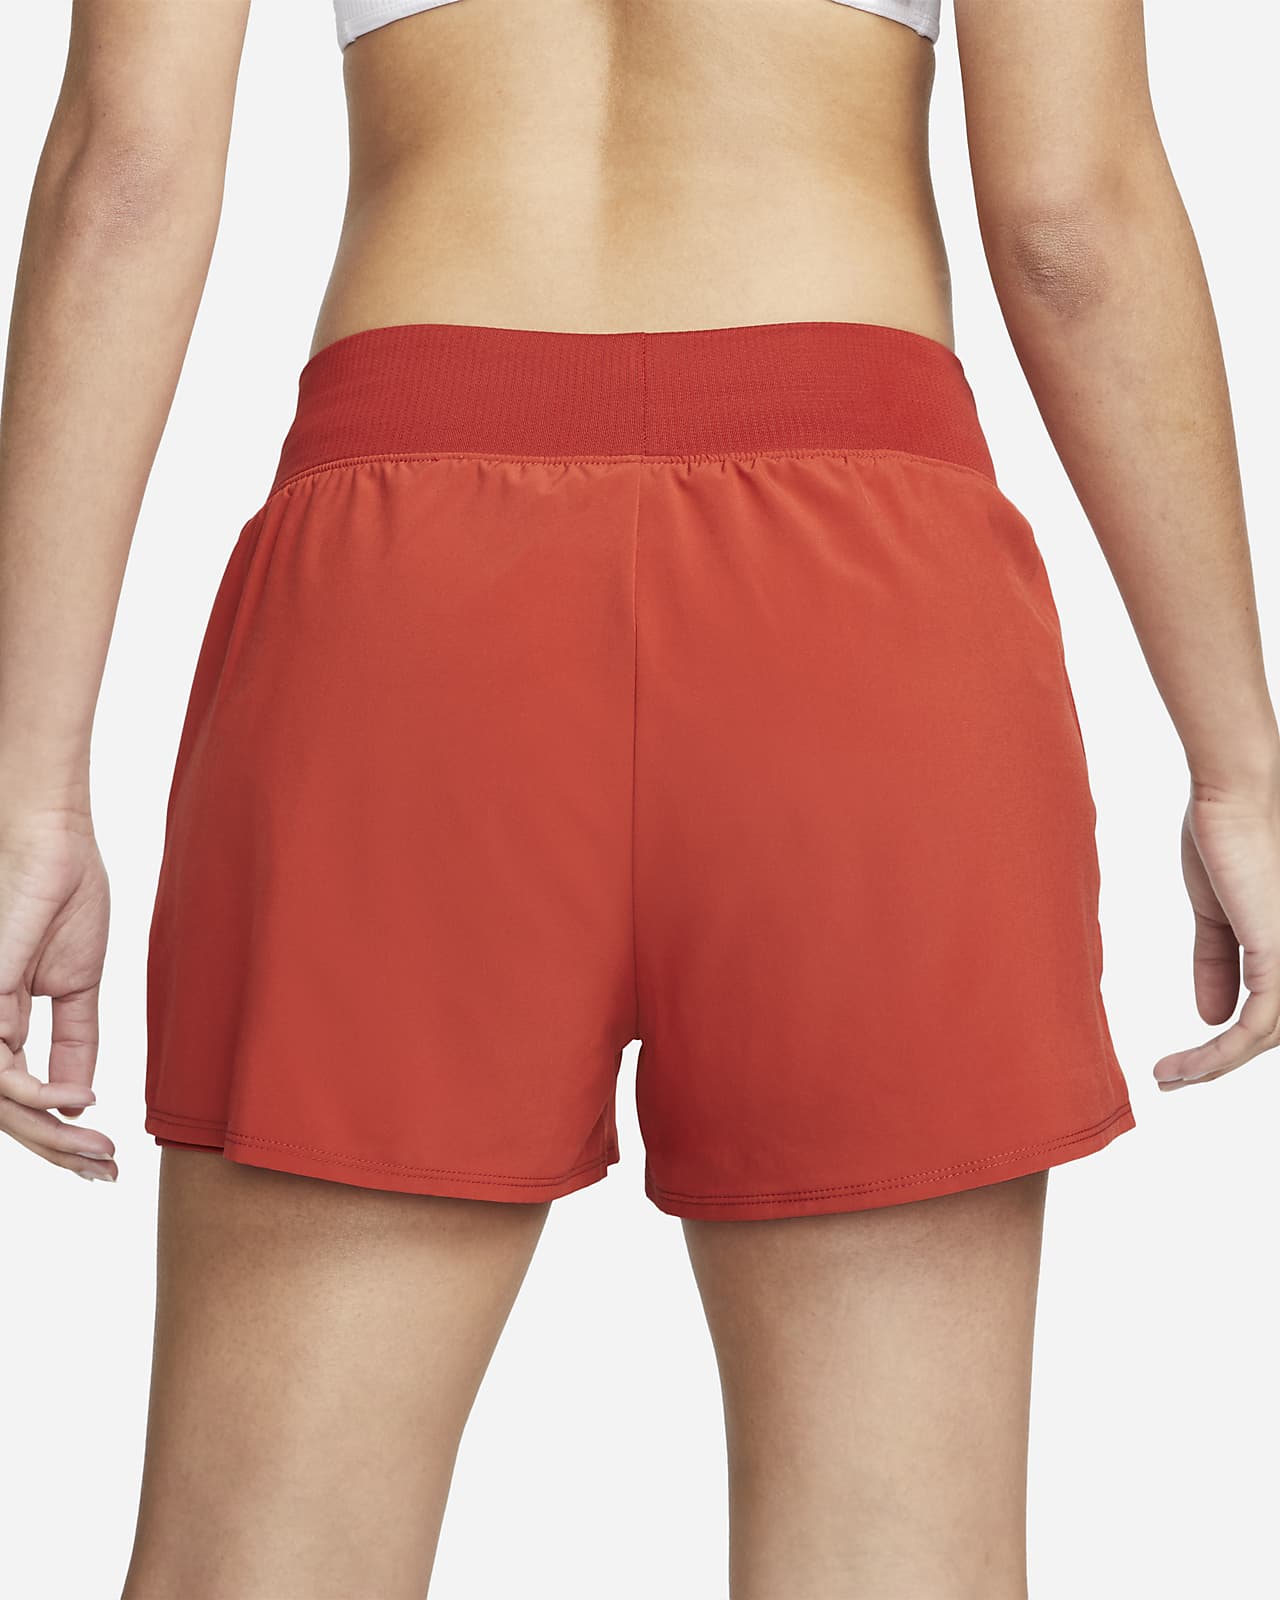 NikeCourt Women's Tennis Pants BV1061-010